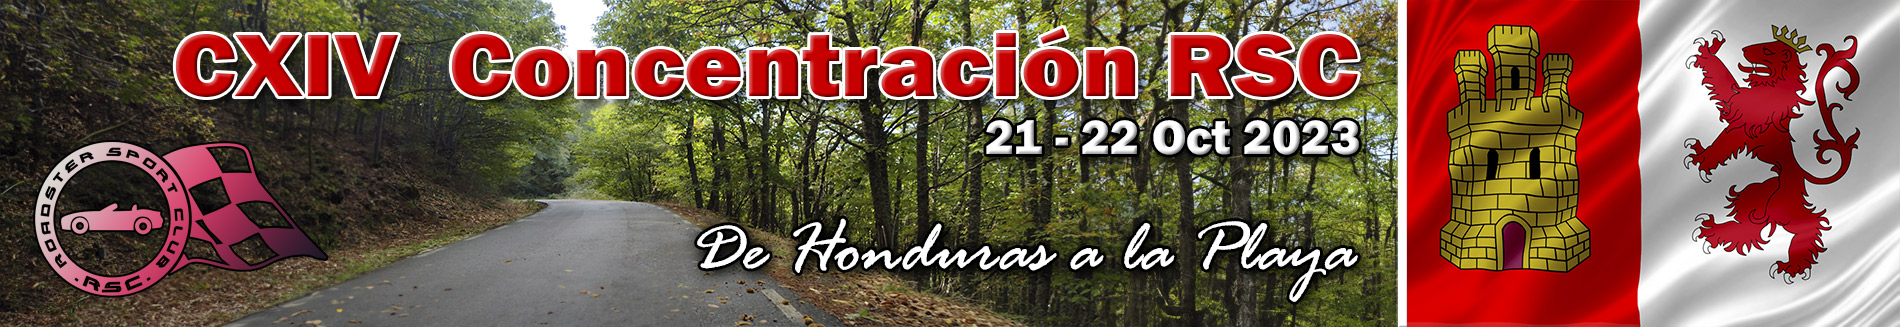 CXIV Concentración: De Honduras a la playa